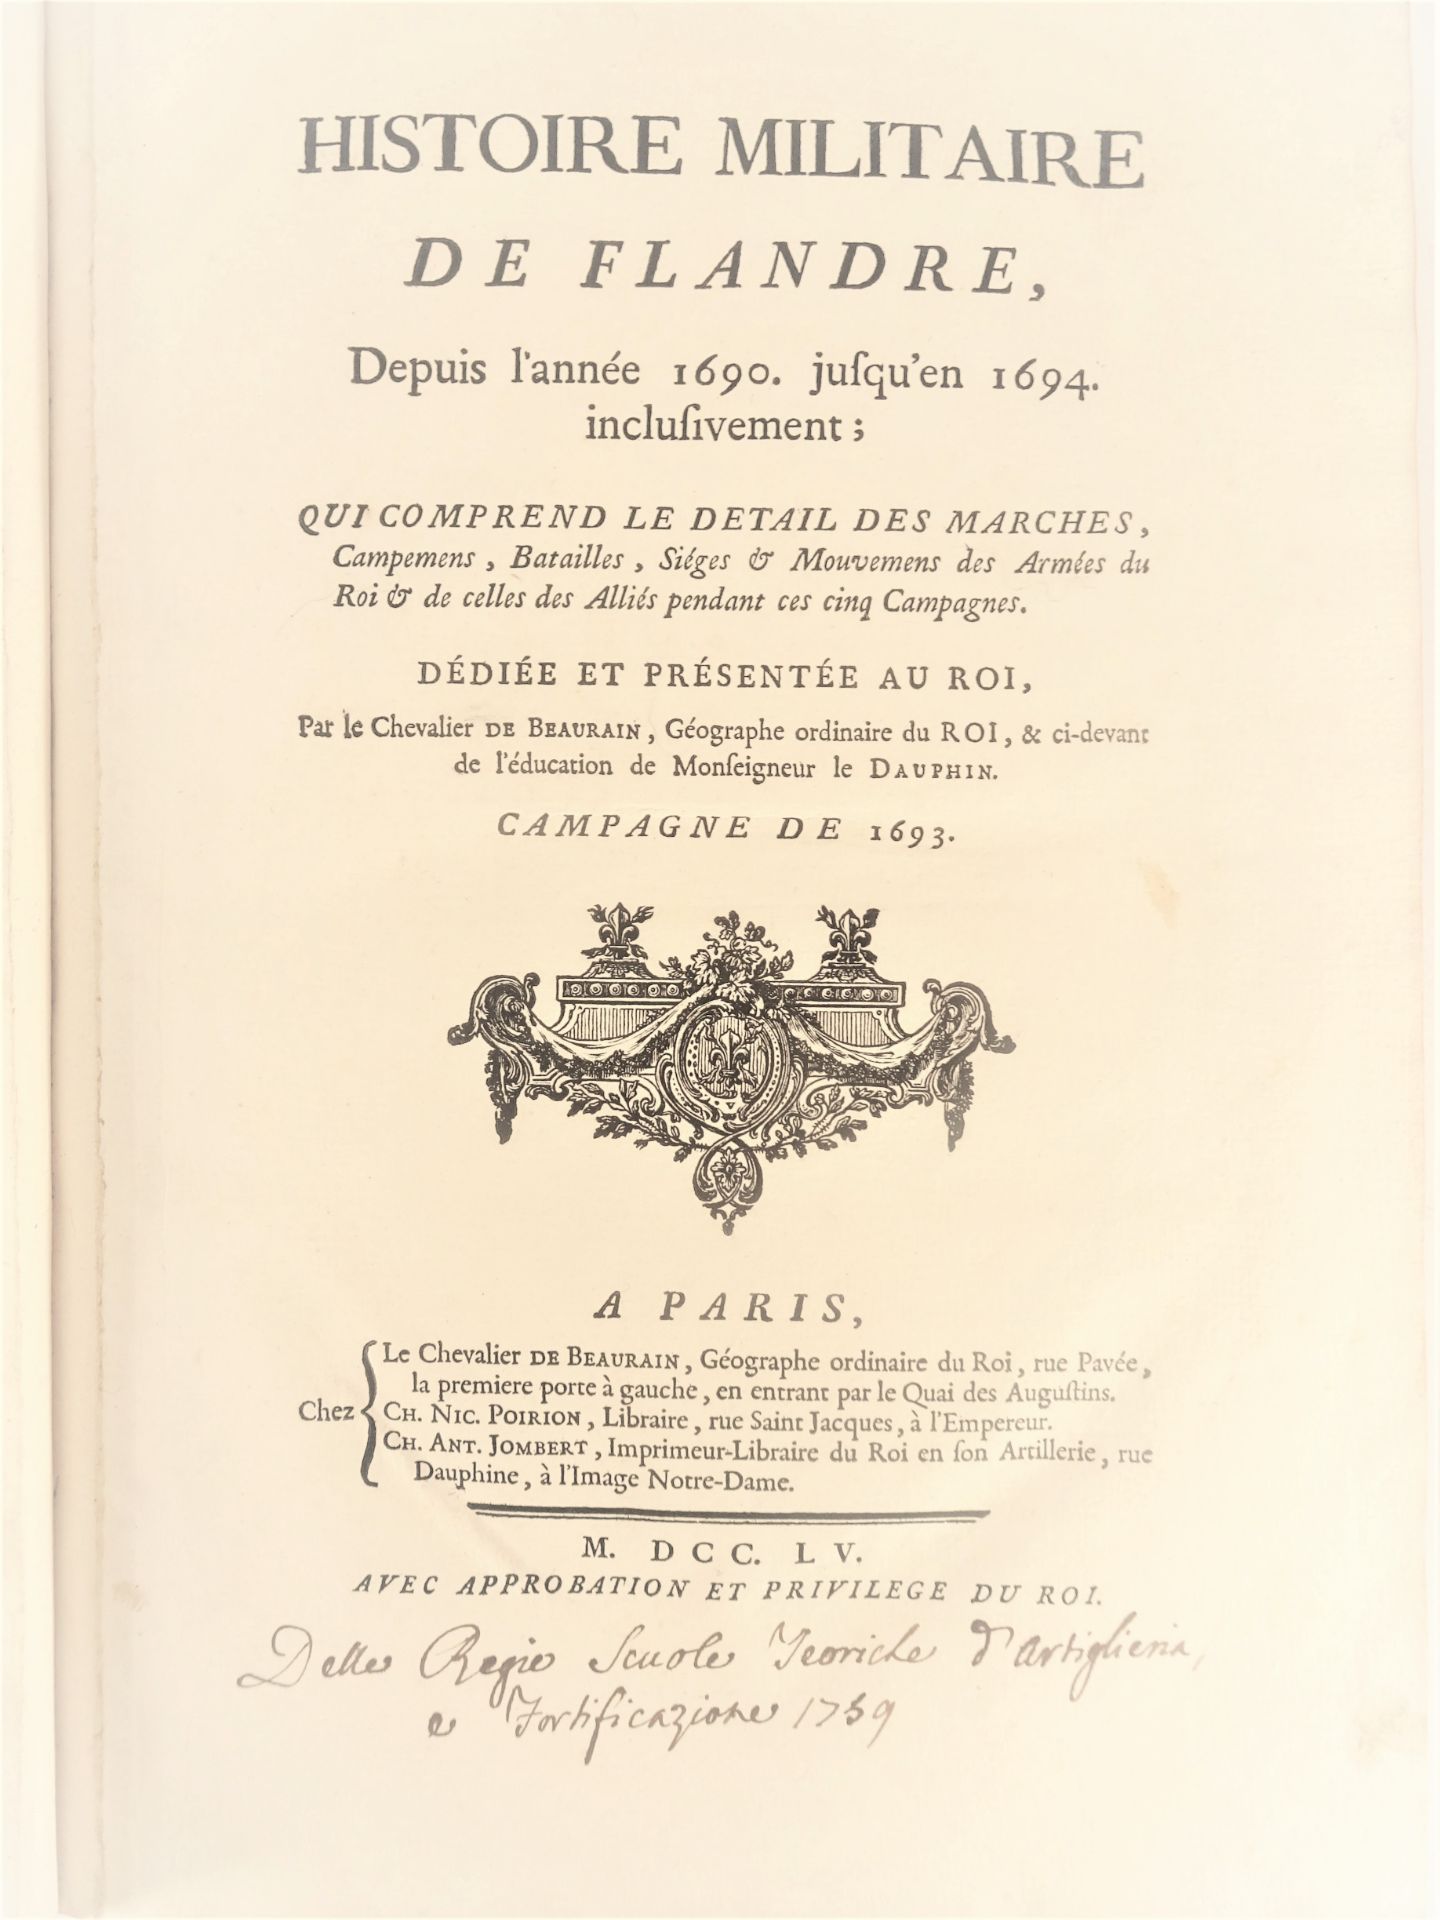 |Histoire Militaire| Chevalier de Beaurain, "Histoire Militaire de Flandre depuis l'année 1690 - Image 2 of 19